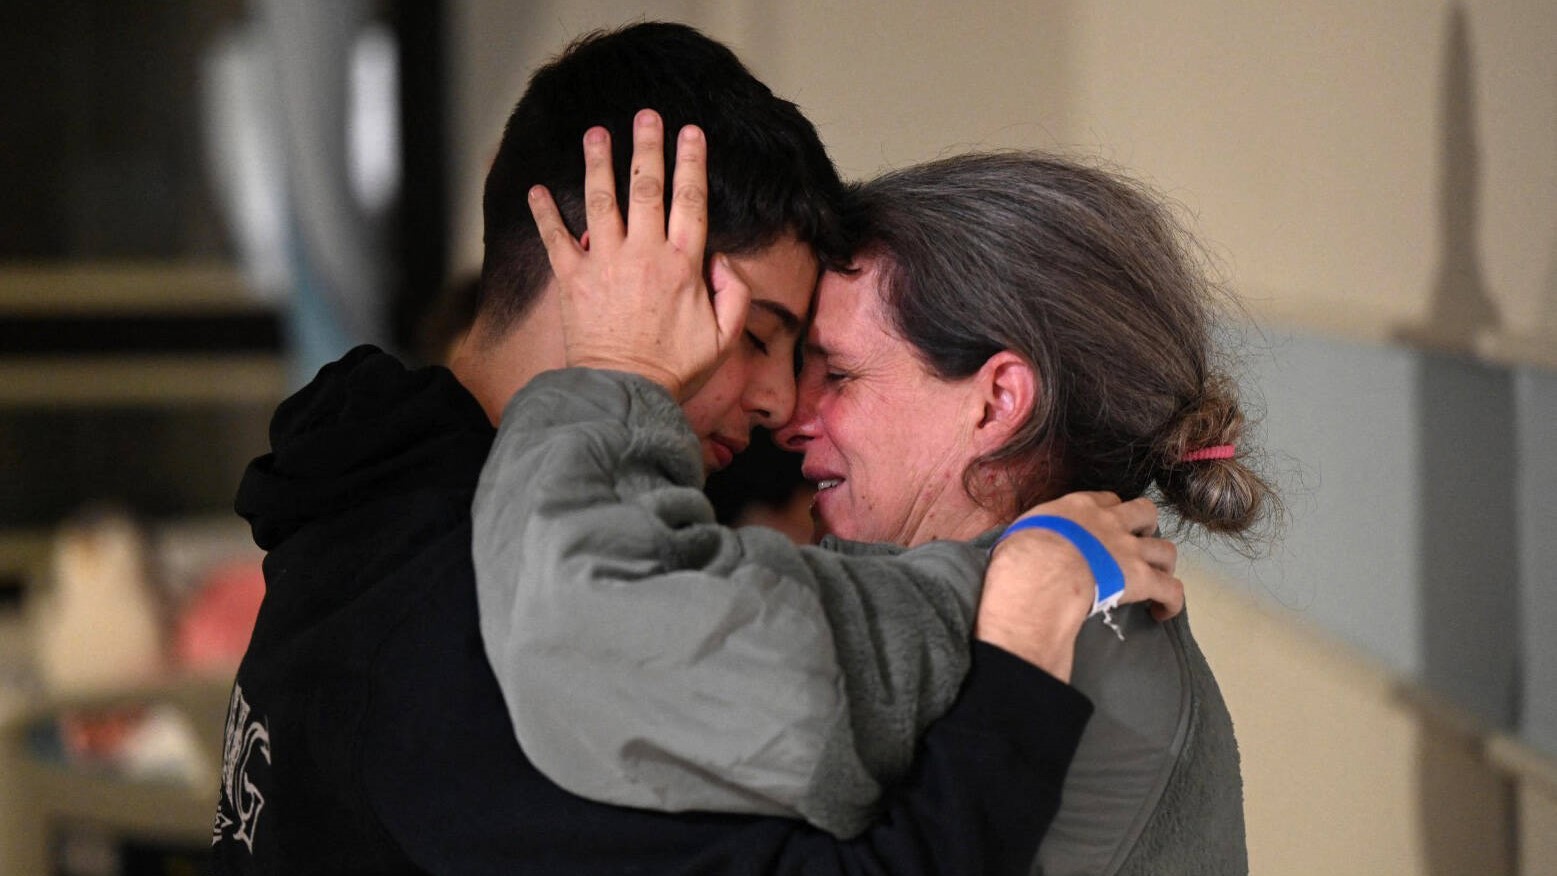 الرهينة الإسرائيلية شارون هيرتزمان أفيغدوري تقبل ابنها بعد إطلاق سراحه من غزة ليلة انقضاء الهدنة الأخيرة بين إسرائيل وحماس في 1 ديسمبر الجاري